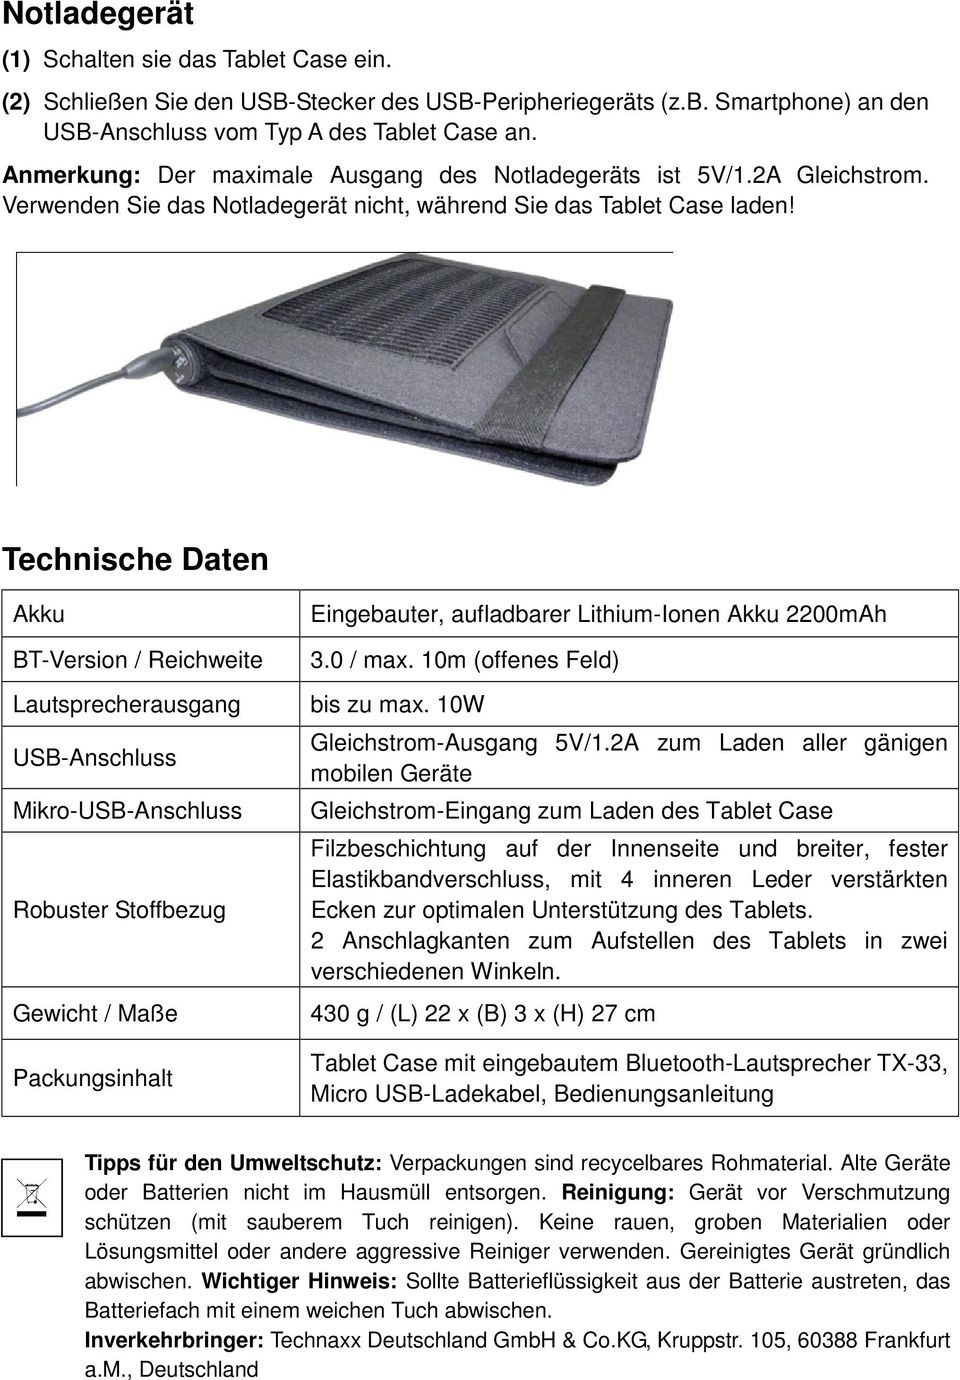 Technische Daten Akku BT-Version / Reichweite Lautsprecherausgang USB-Anschluss Mikro-USB-Anschluss Robuster Stoffbezug Gewicht / Maße Packungsinhalt Eingebauter, aufladbarer Lithium-Ionen Akku